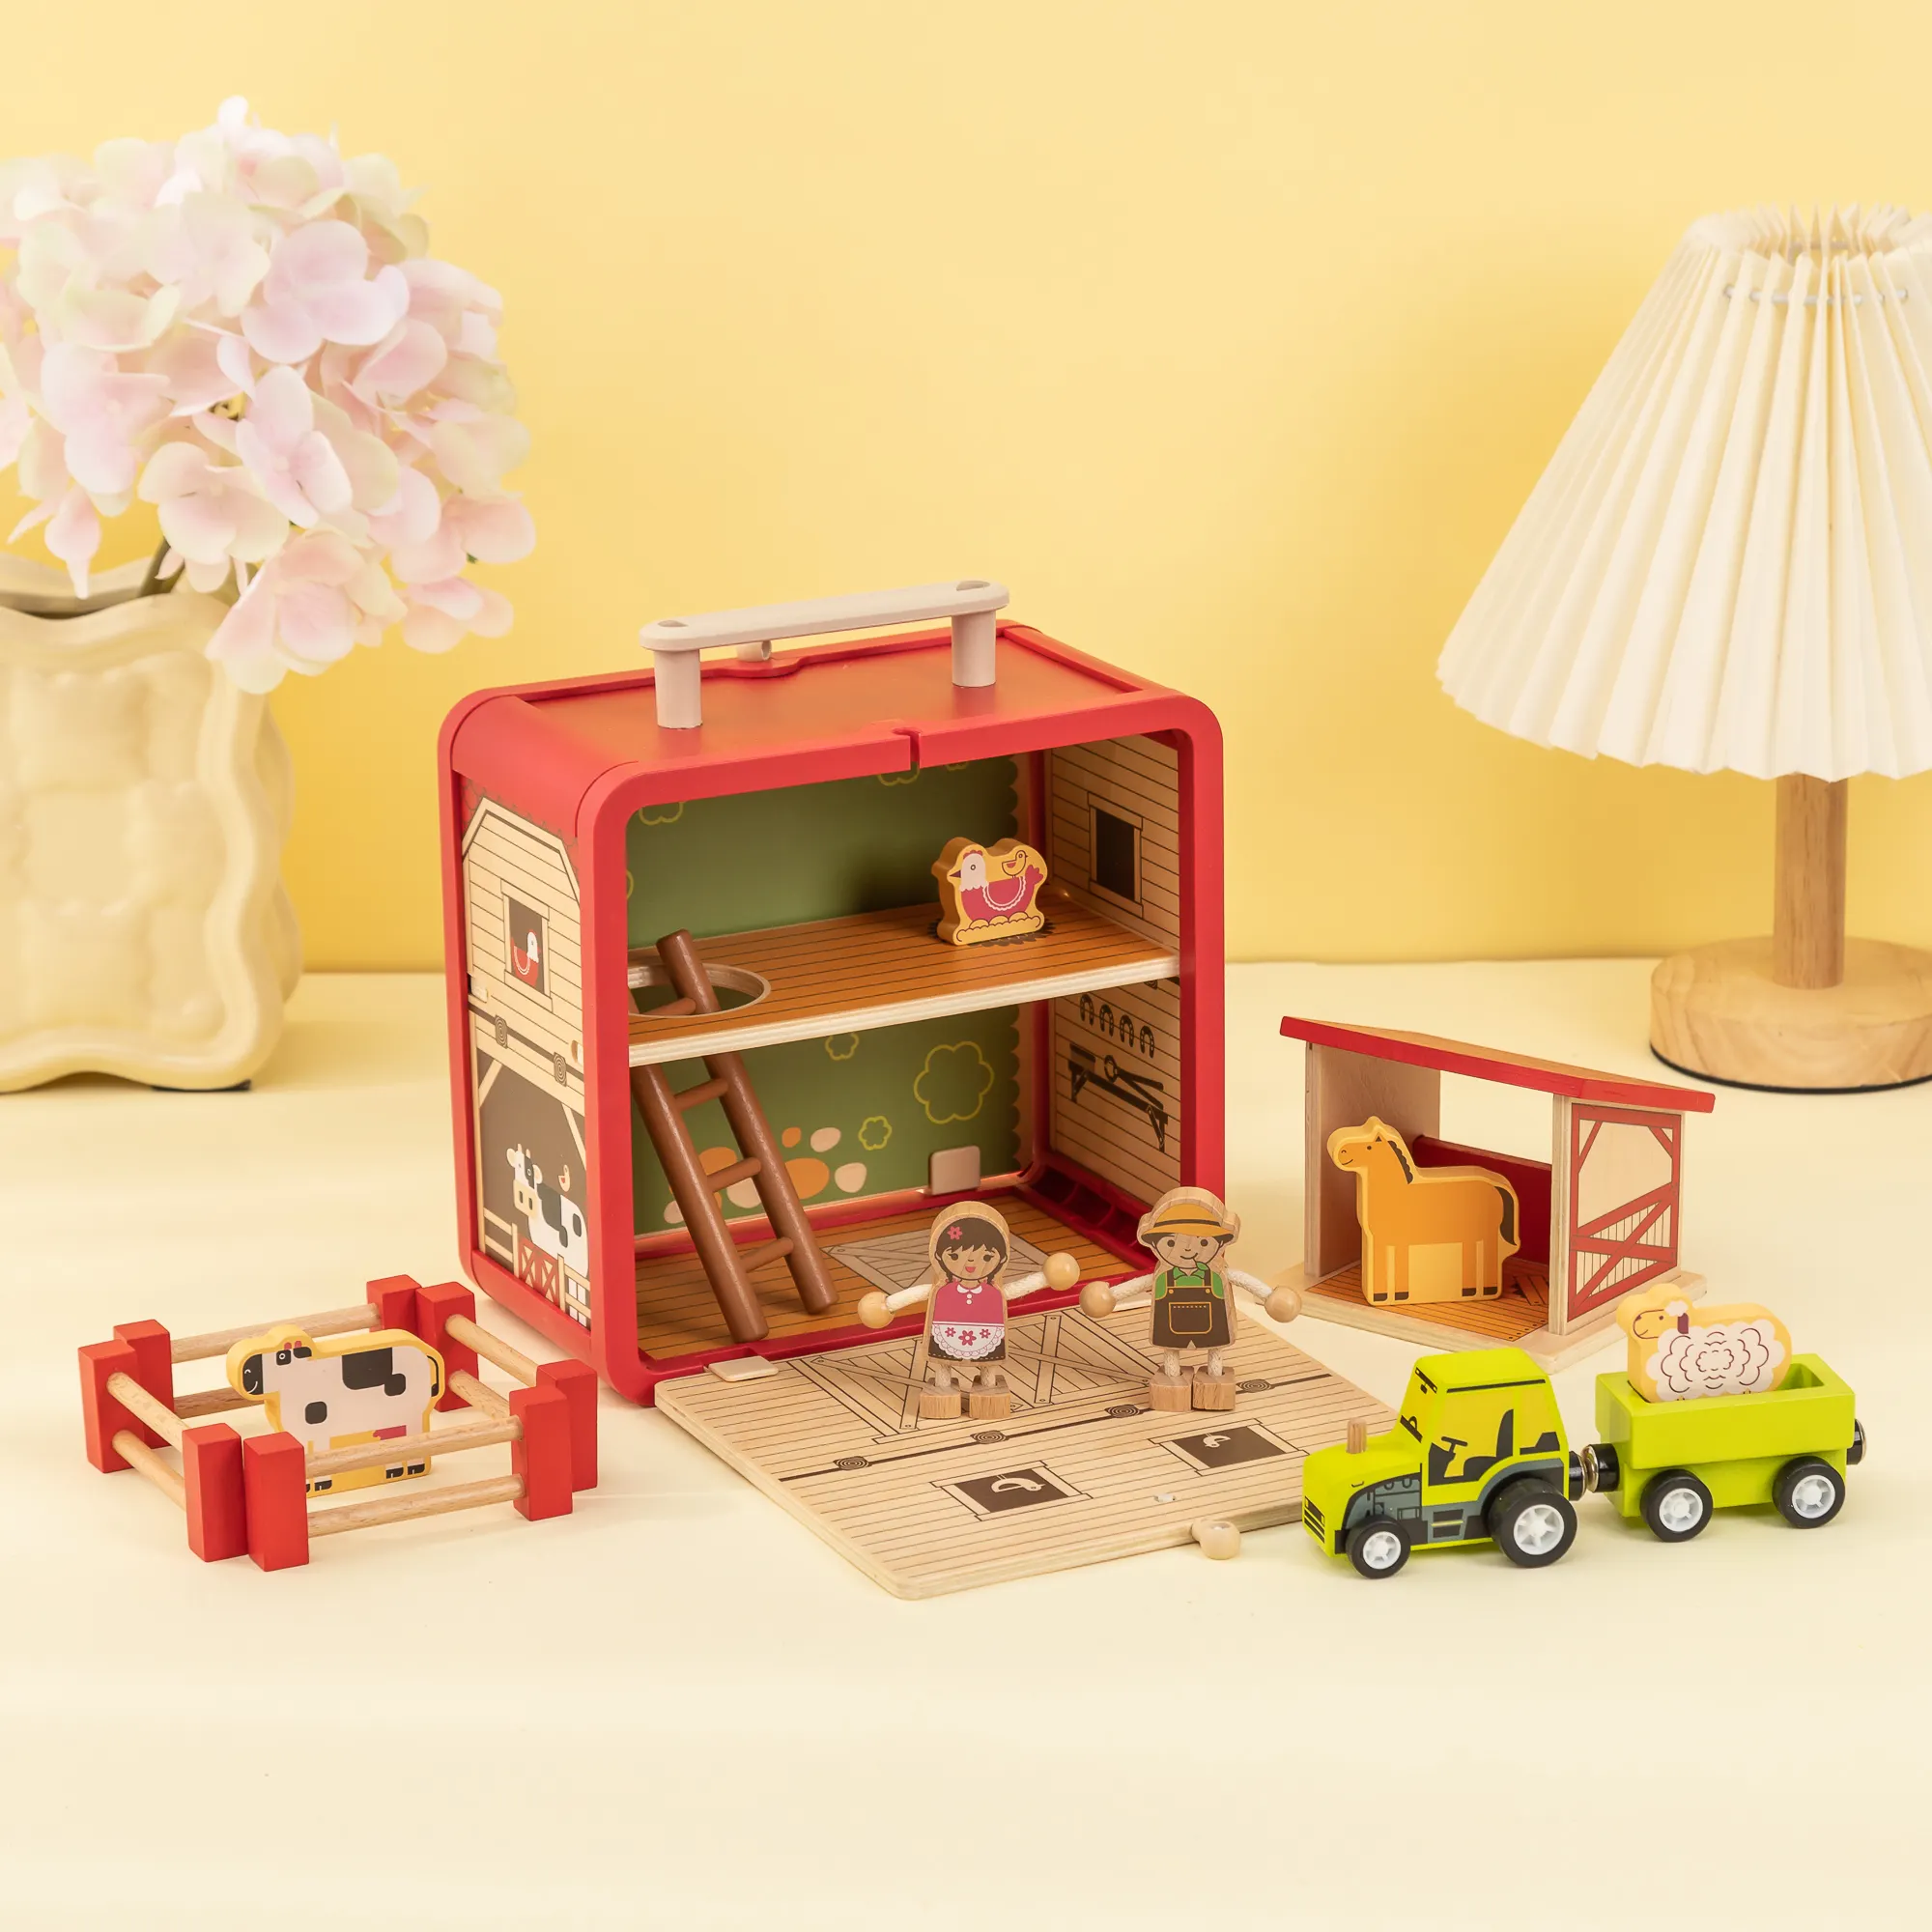 UDEAS mainan edukasi anak-anak, rumah bermain pertanian kayu dengan traktor terkenal